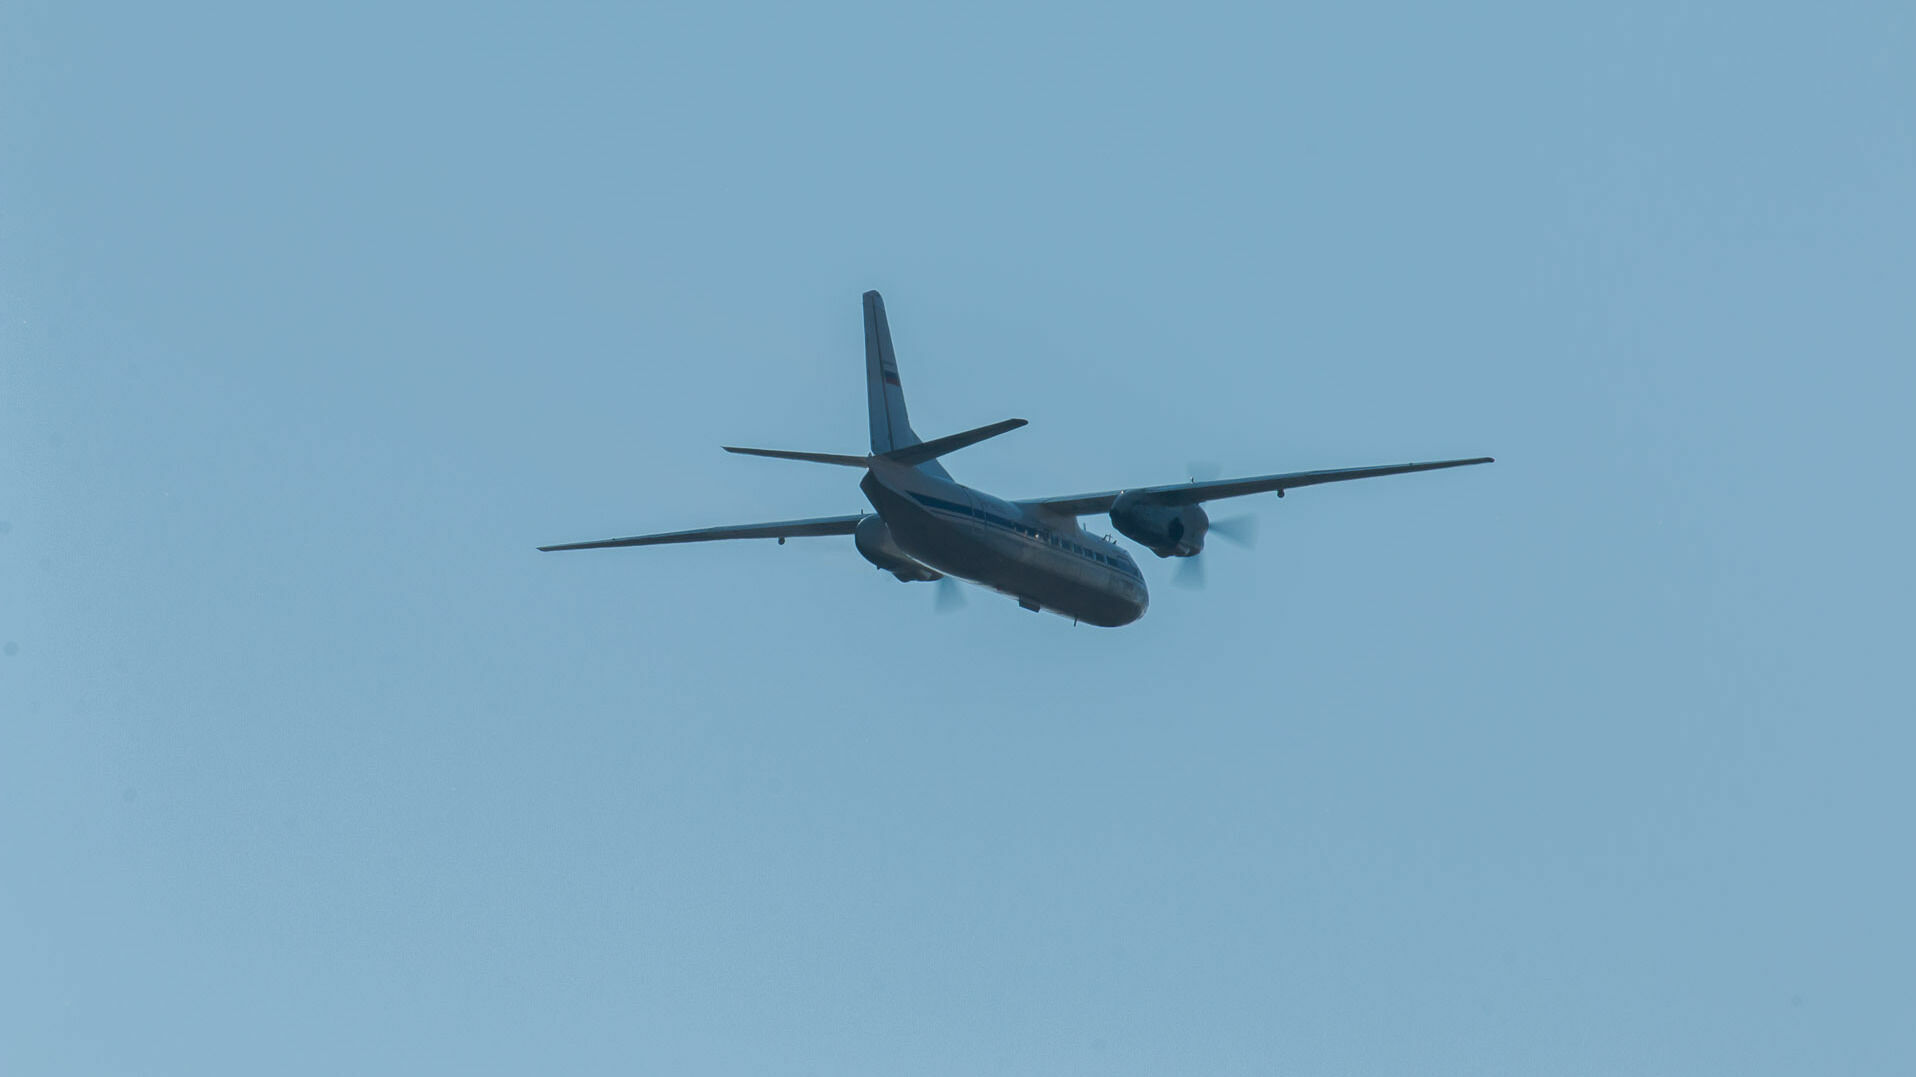 Проблемы с двигателем помешали самолету SSJ-100 авиакомпании «Аэрофлот» долететь до Перми